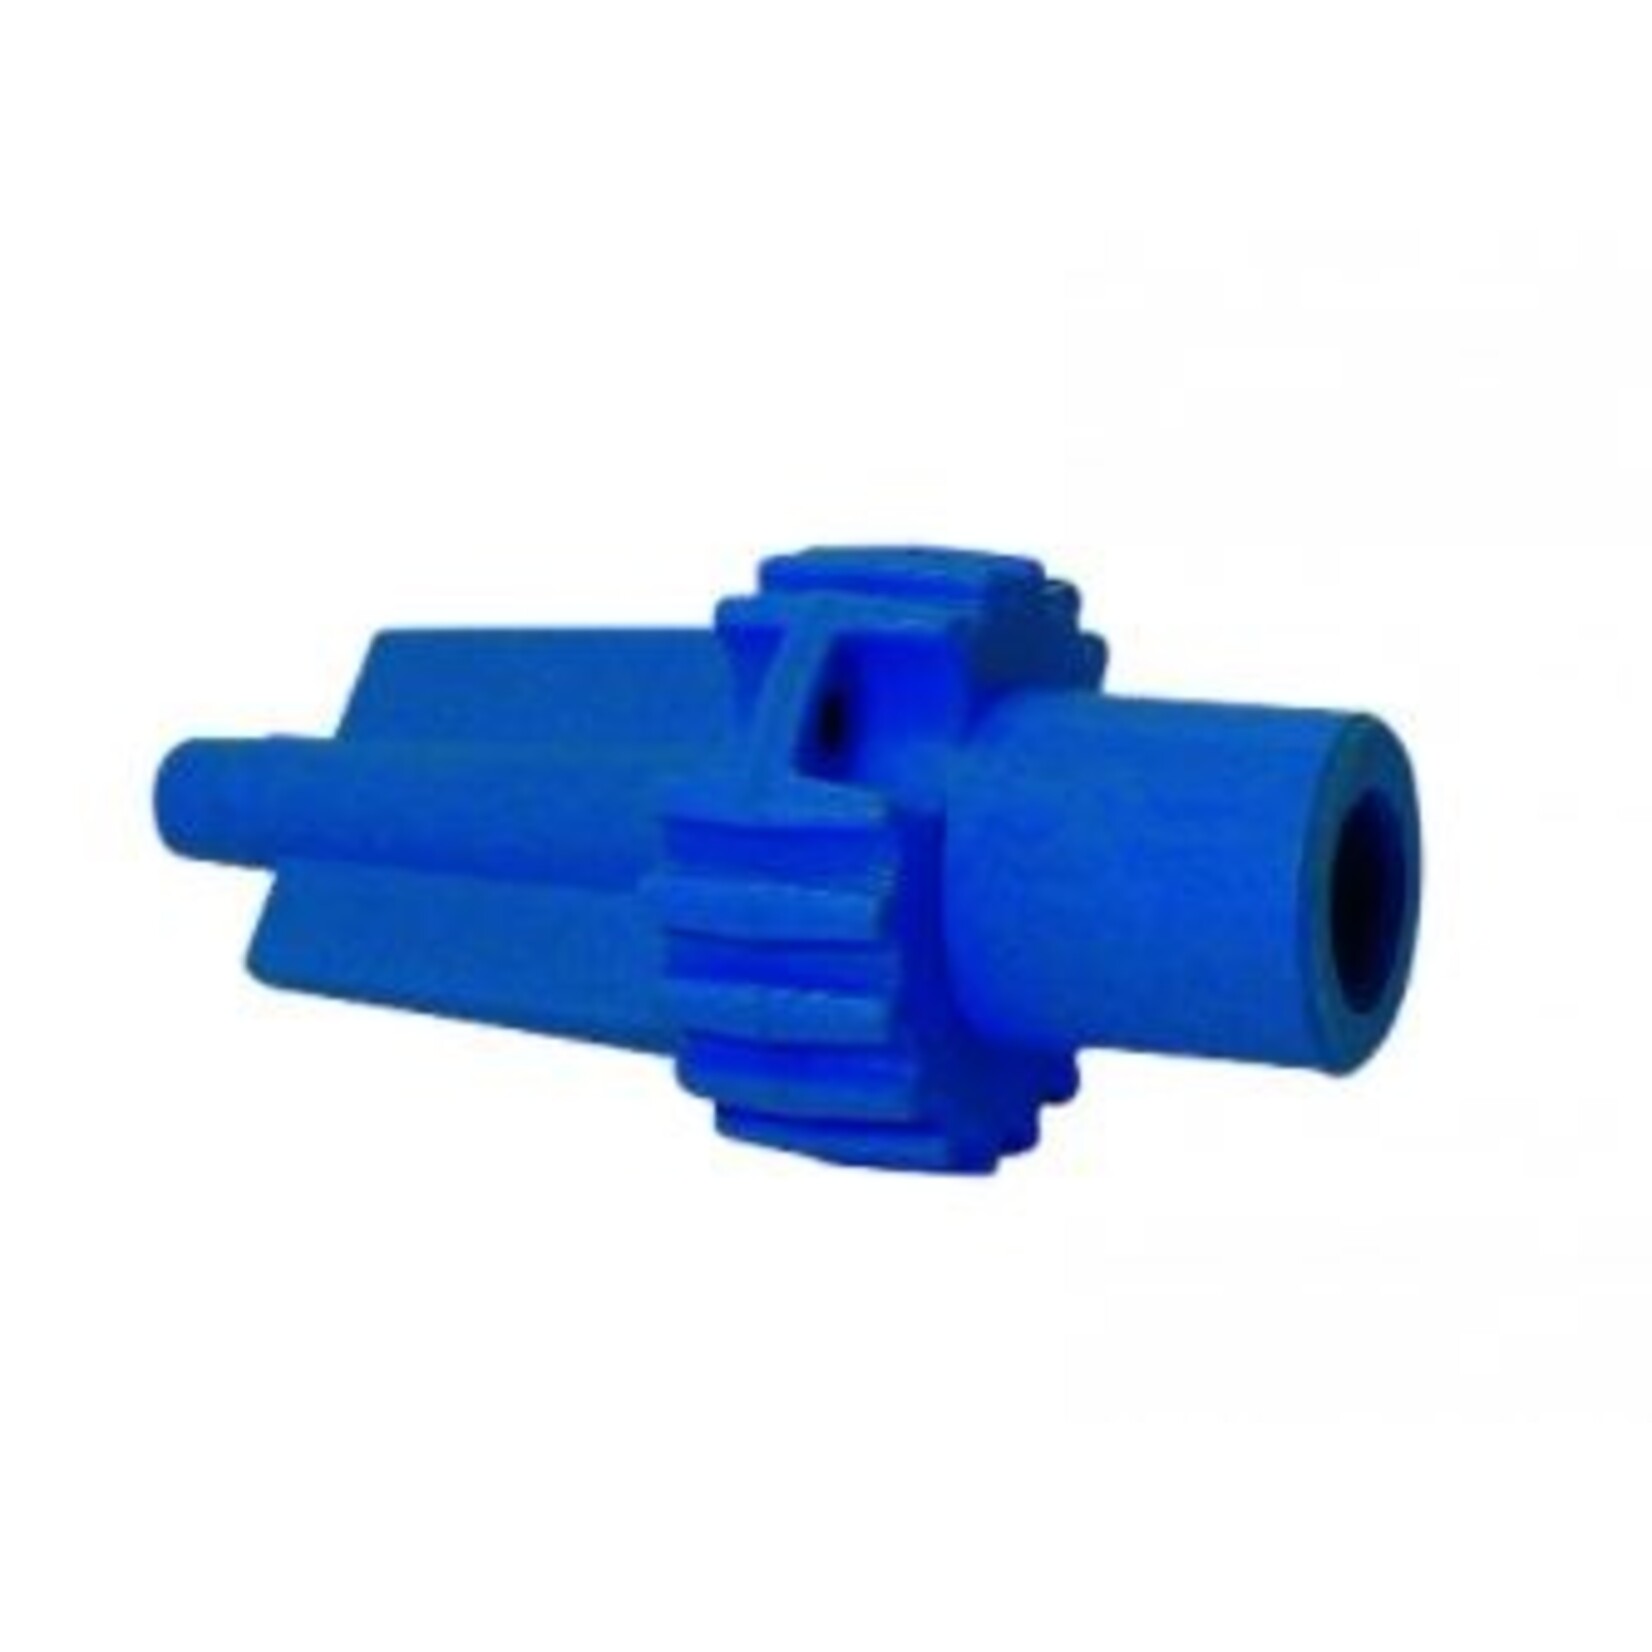 Plastimo Adapter fr infl valve fender+bumper